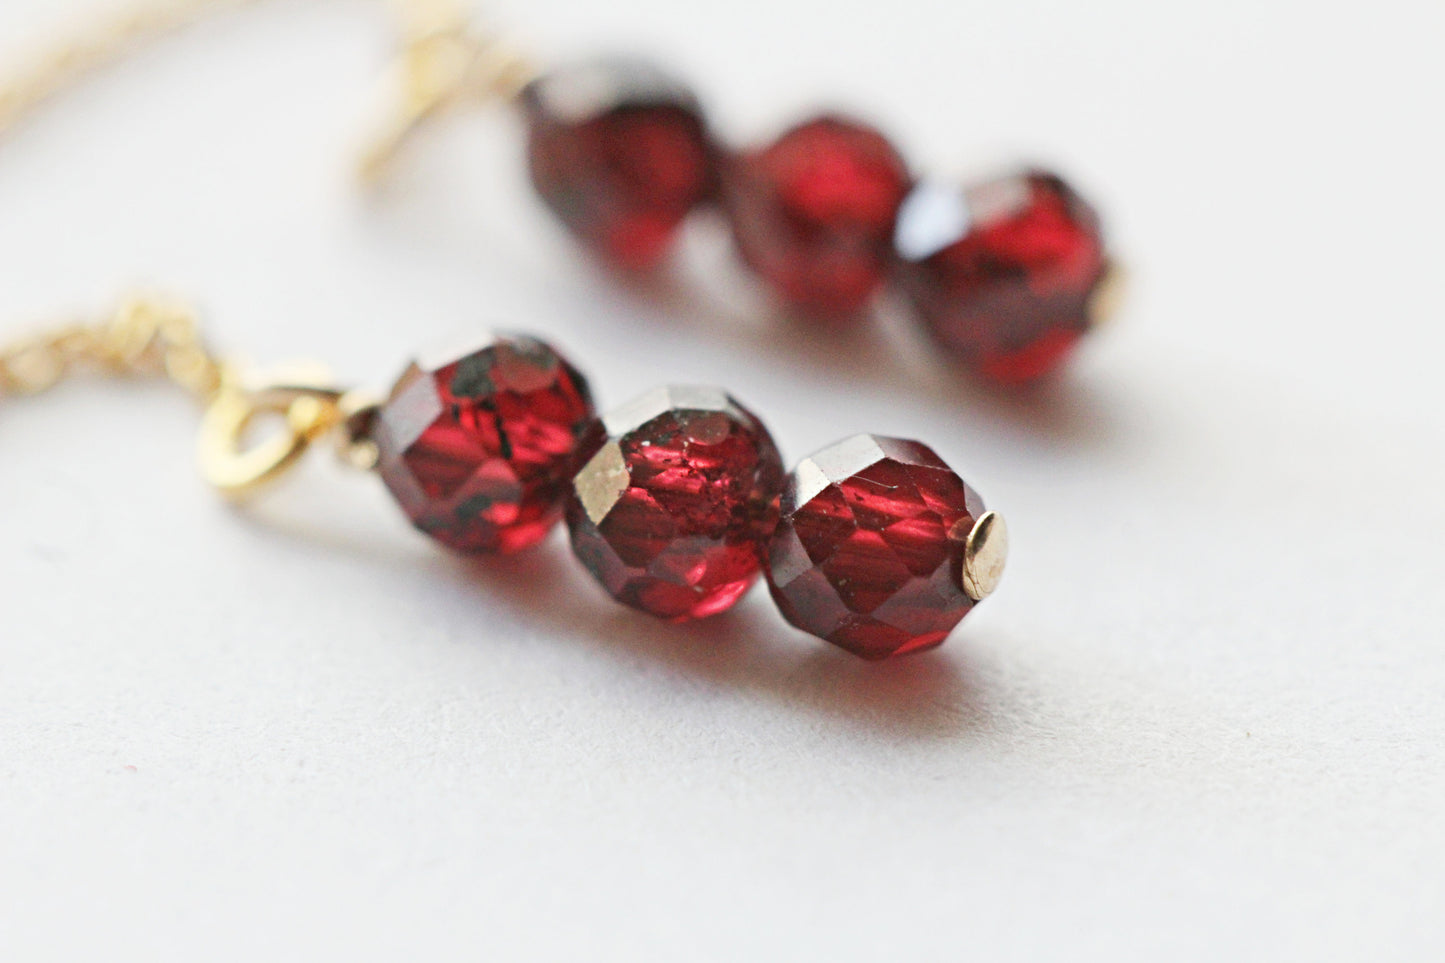 Red Garnet Threader Earrings - January Birthstone